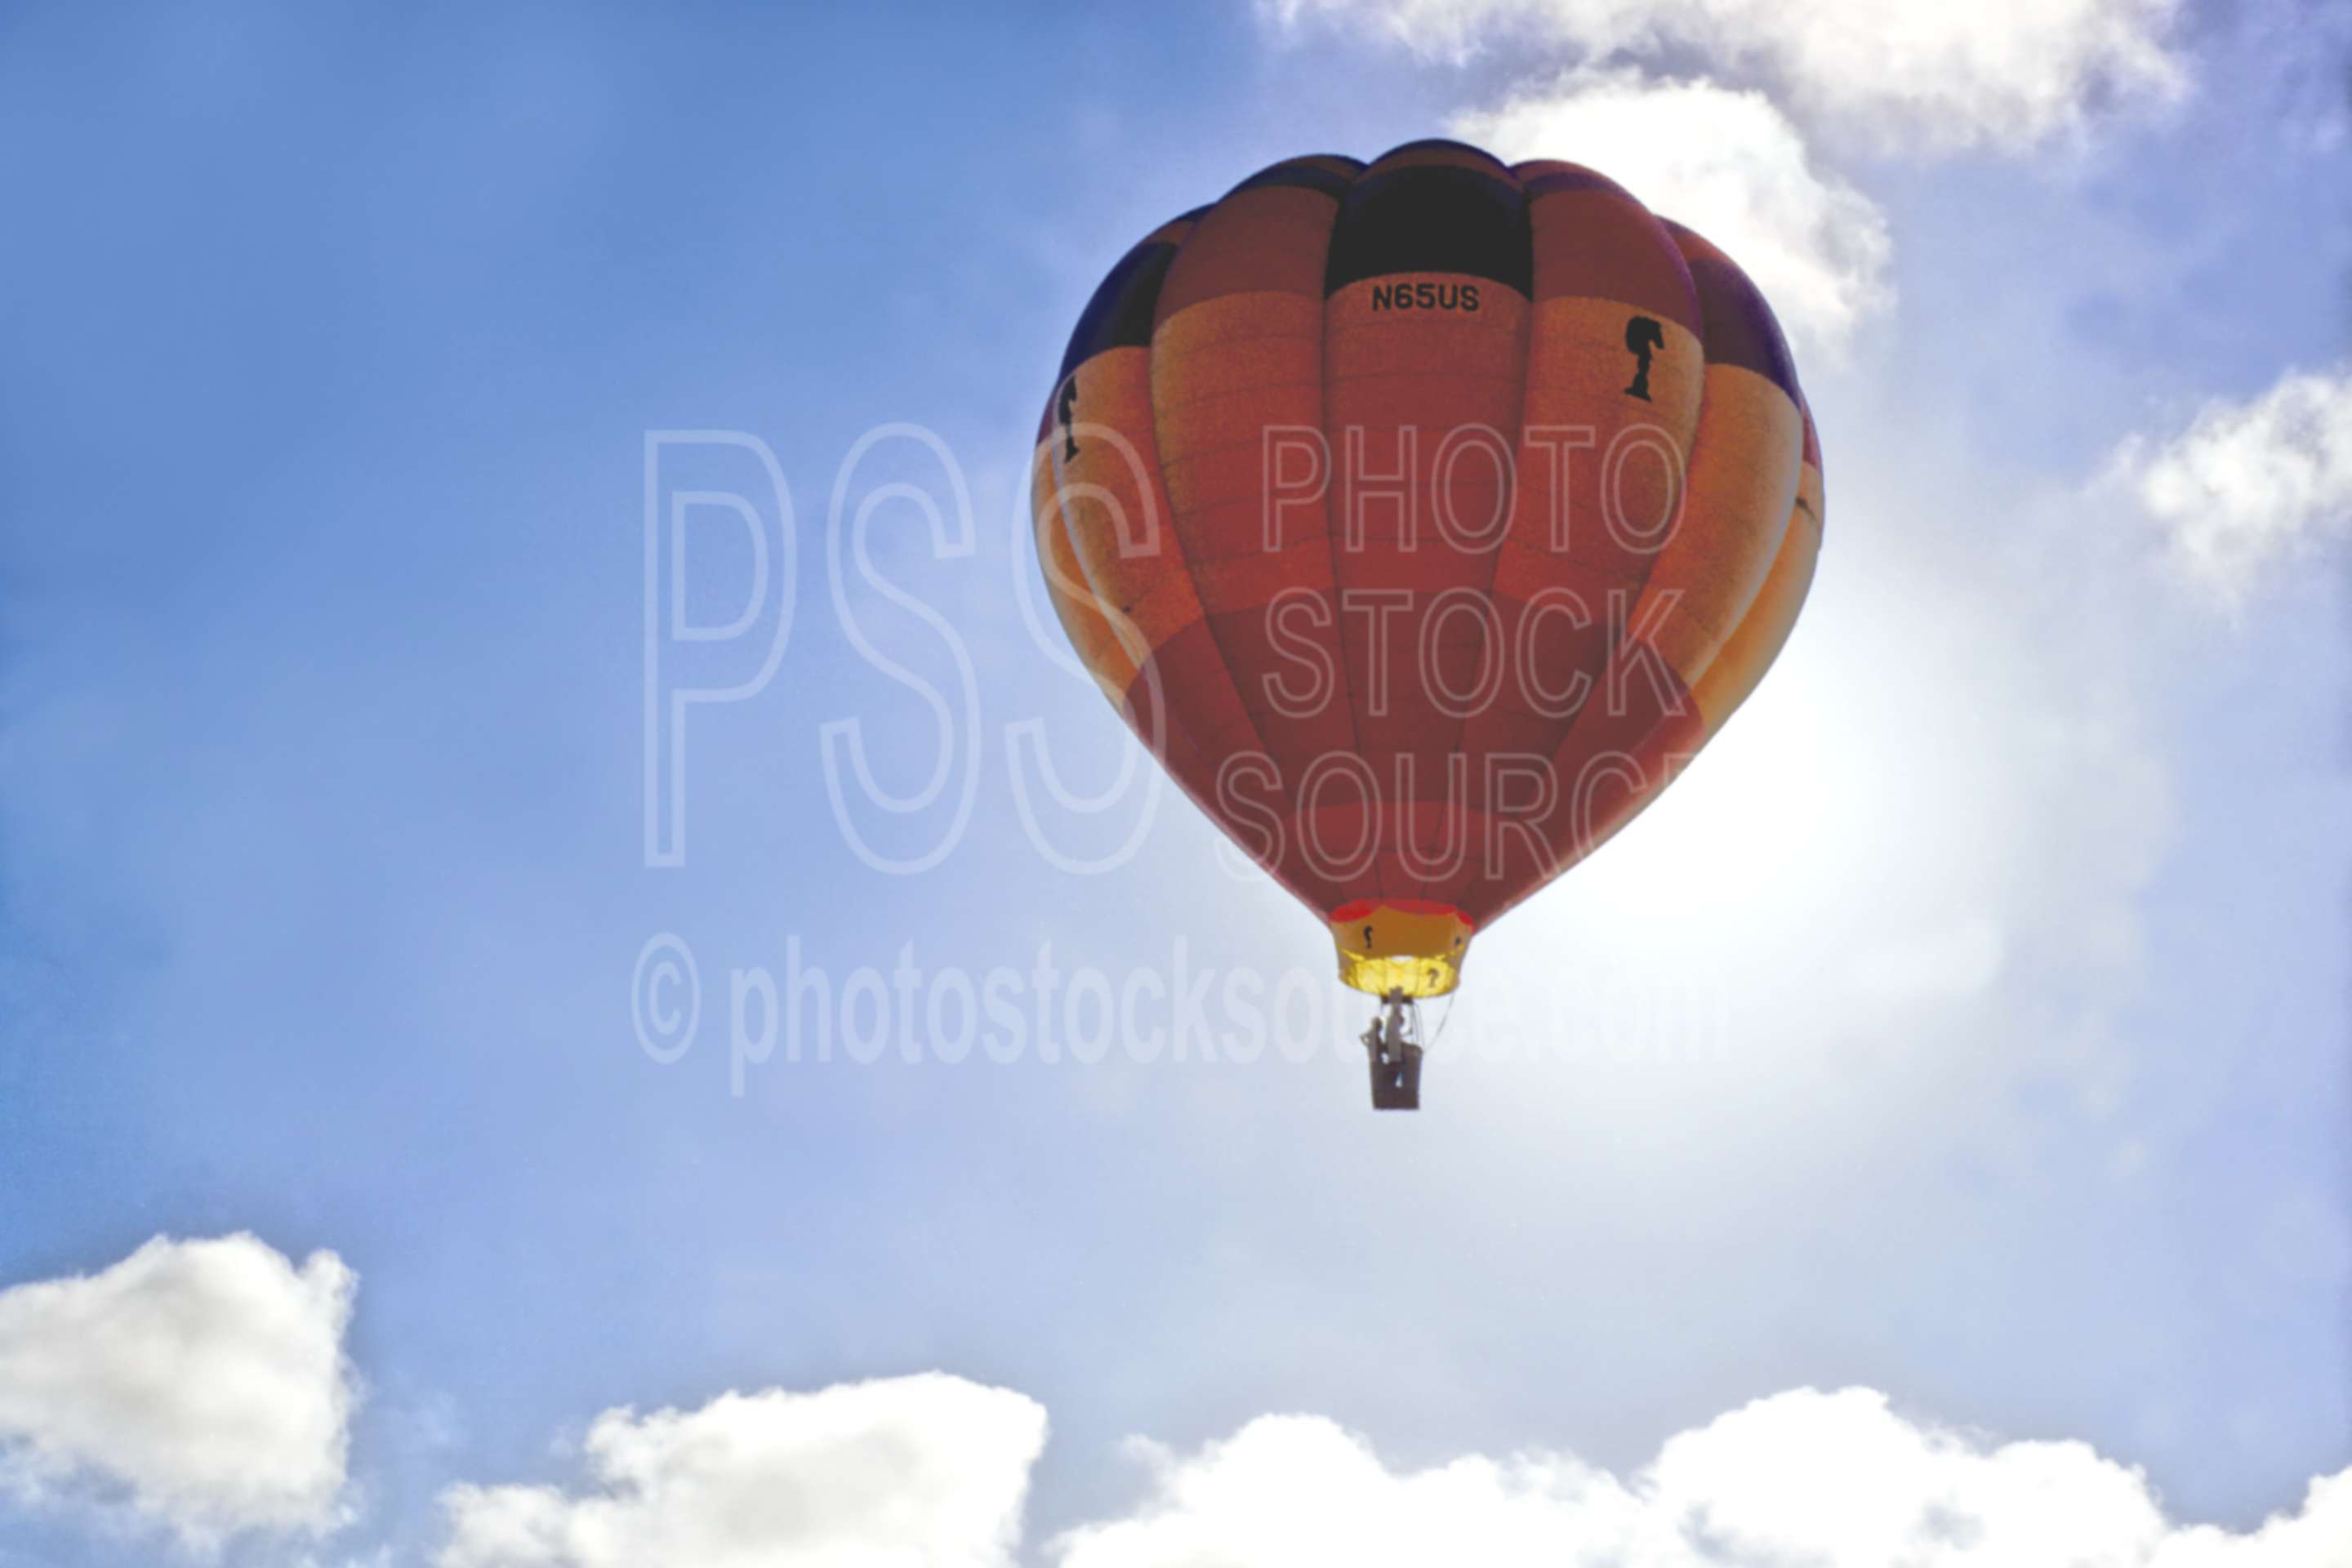 Balloon in Flight,flight,hot air balloon,aeronautics,usas